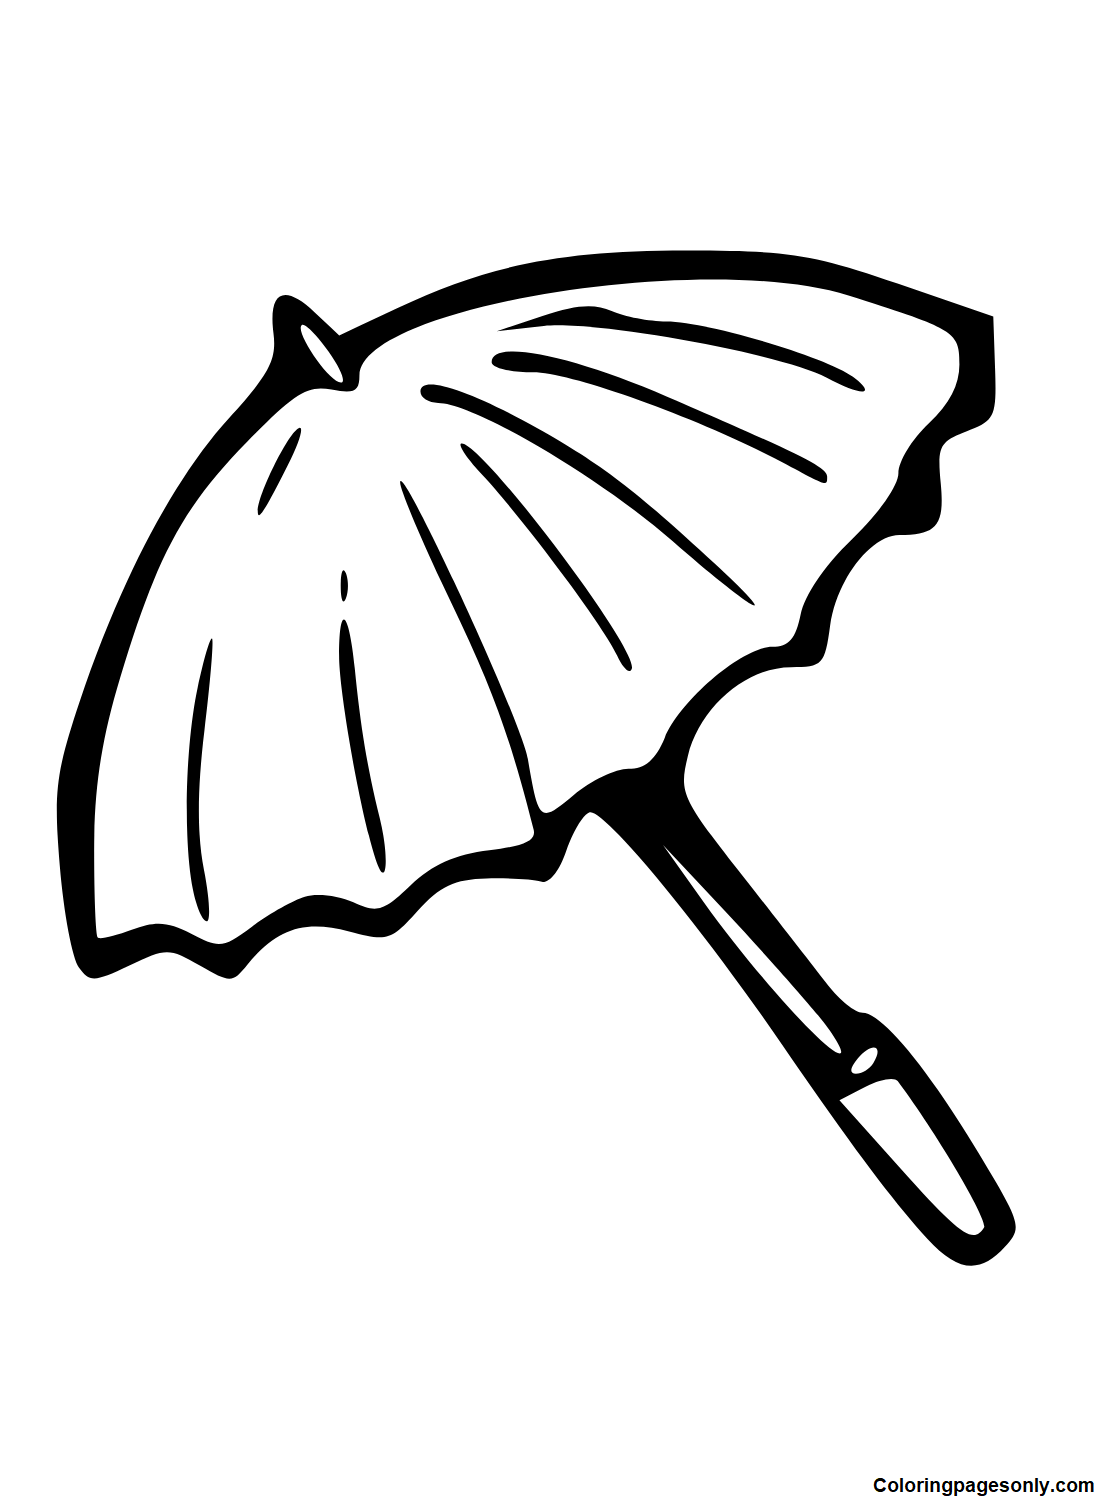 Abra o guarda-chuva da Umbrella